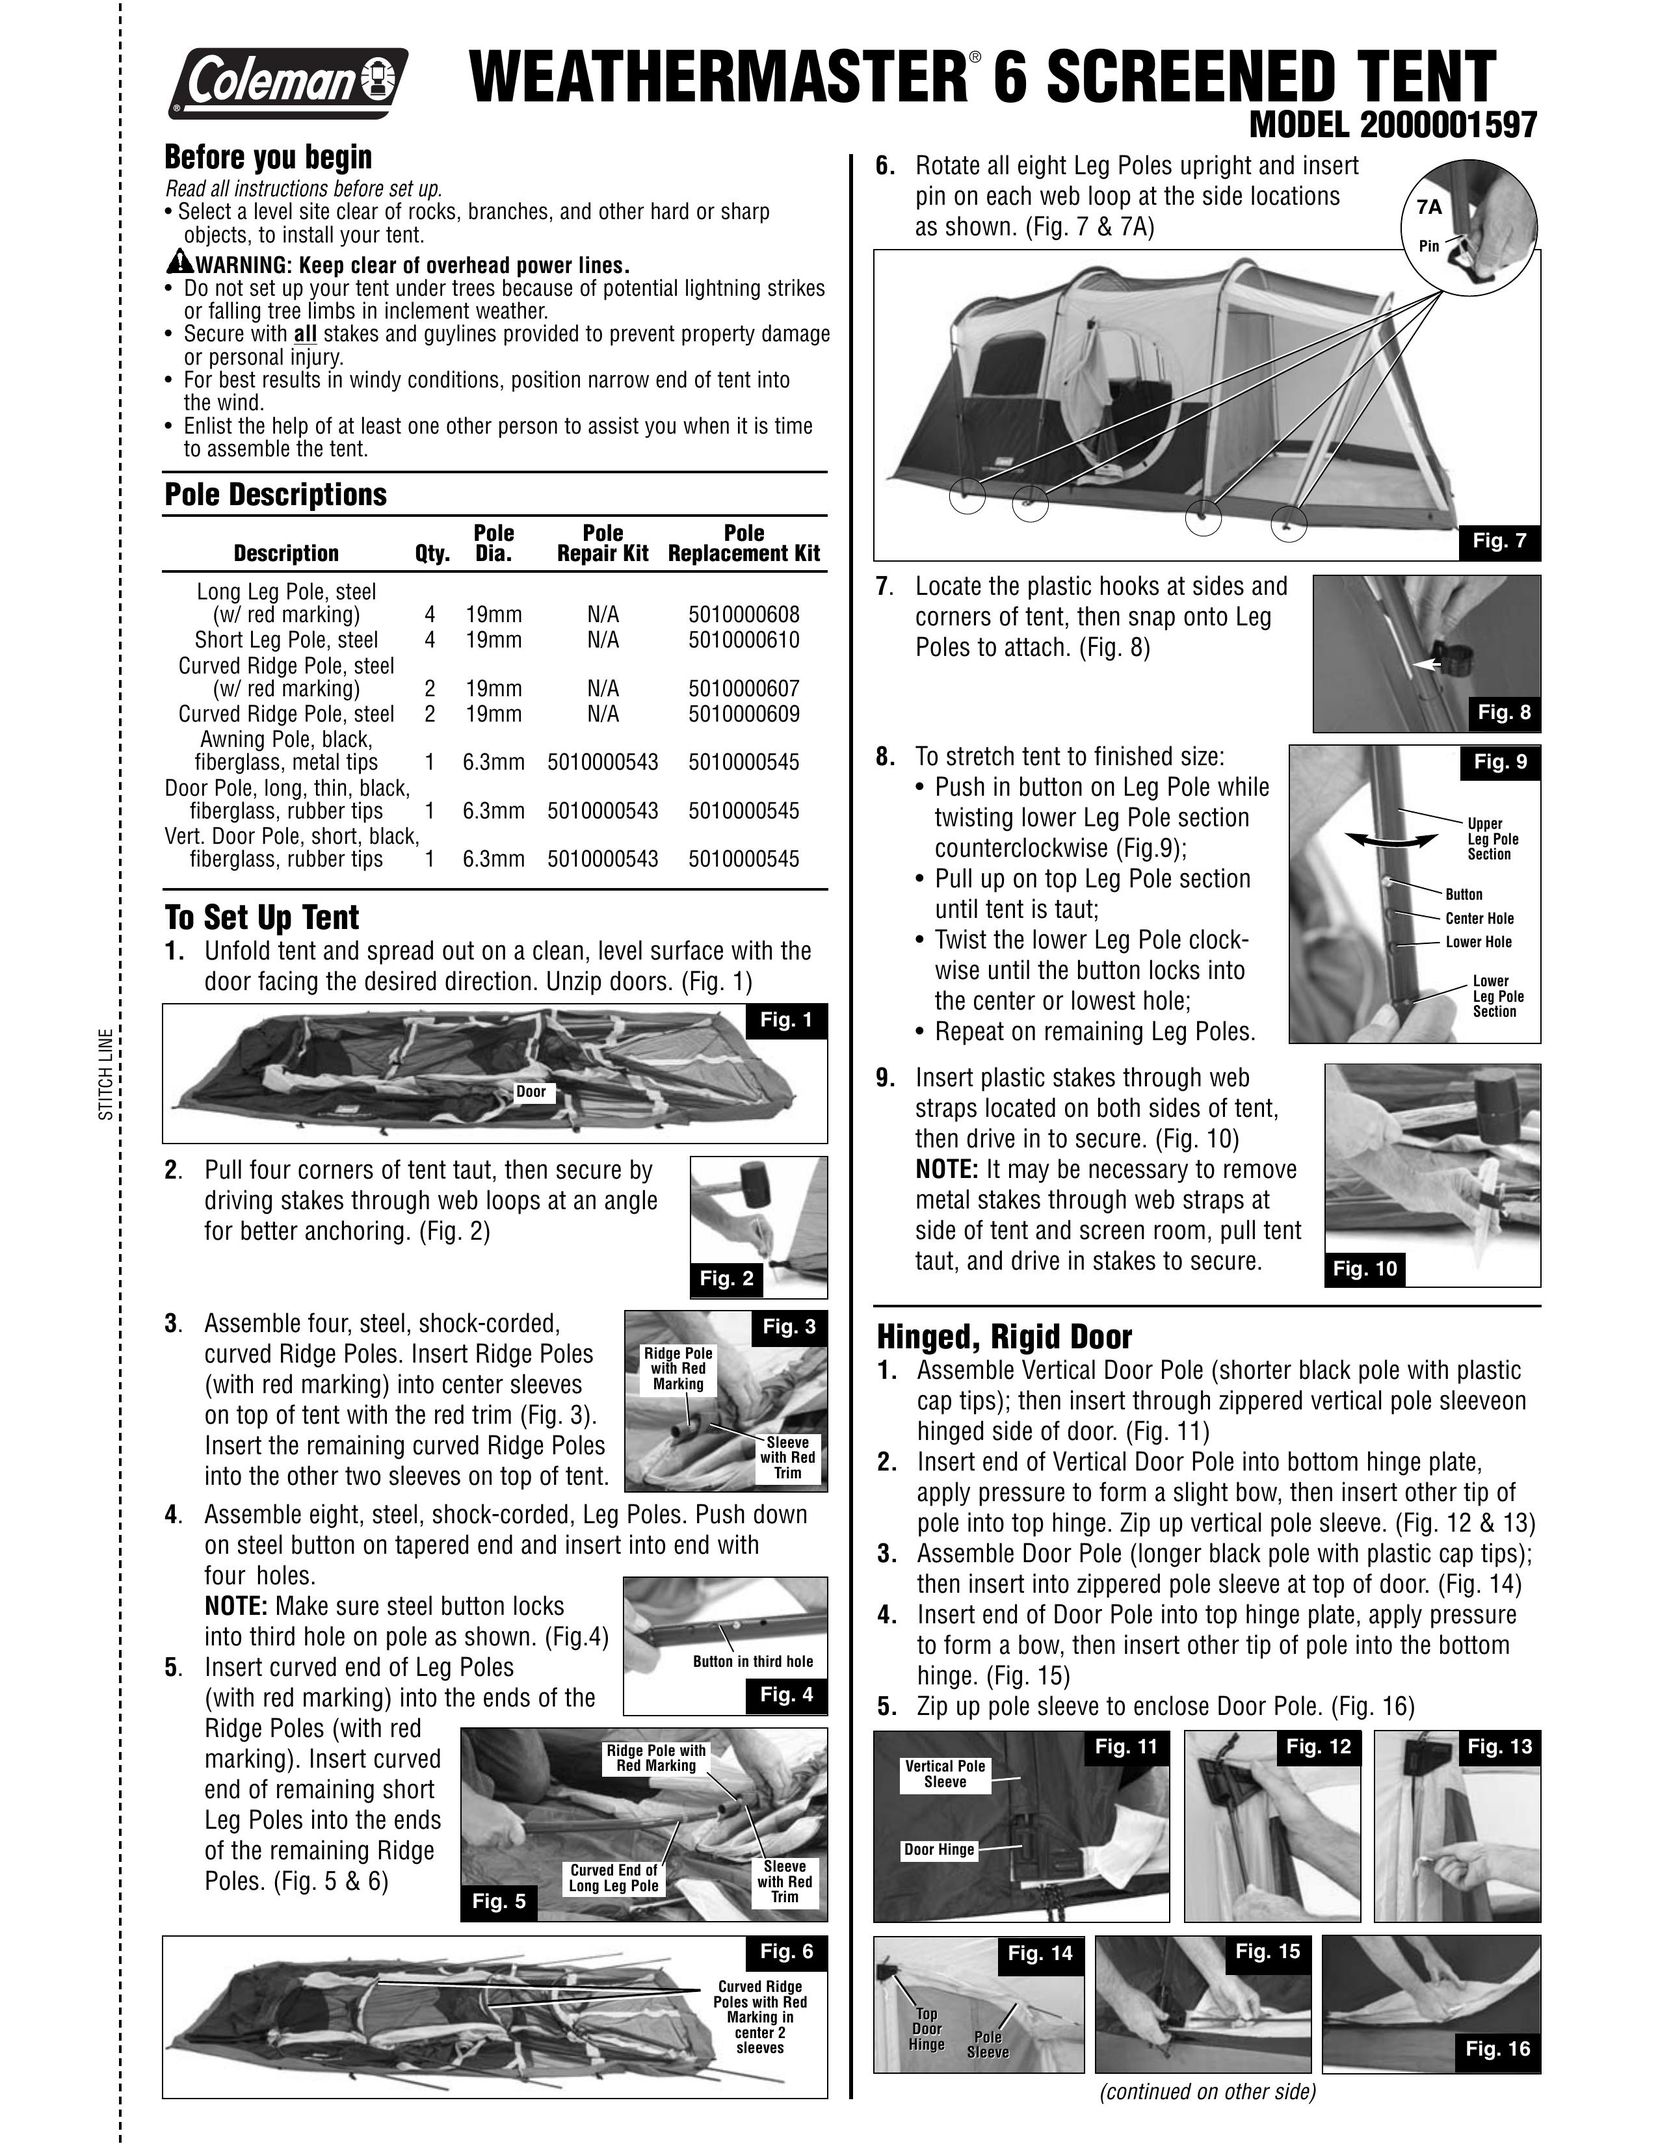 Coleman 2000001597 Tent User Manual